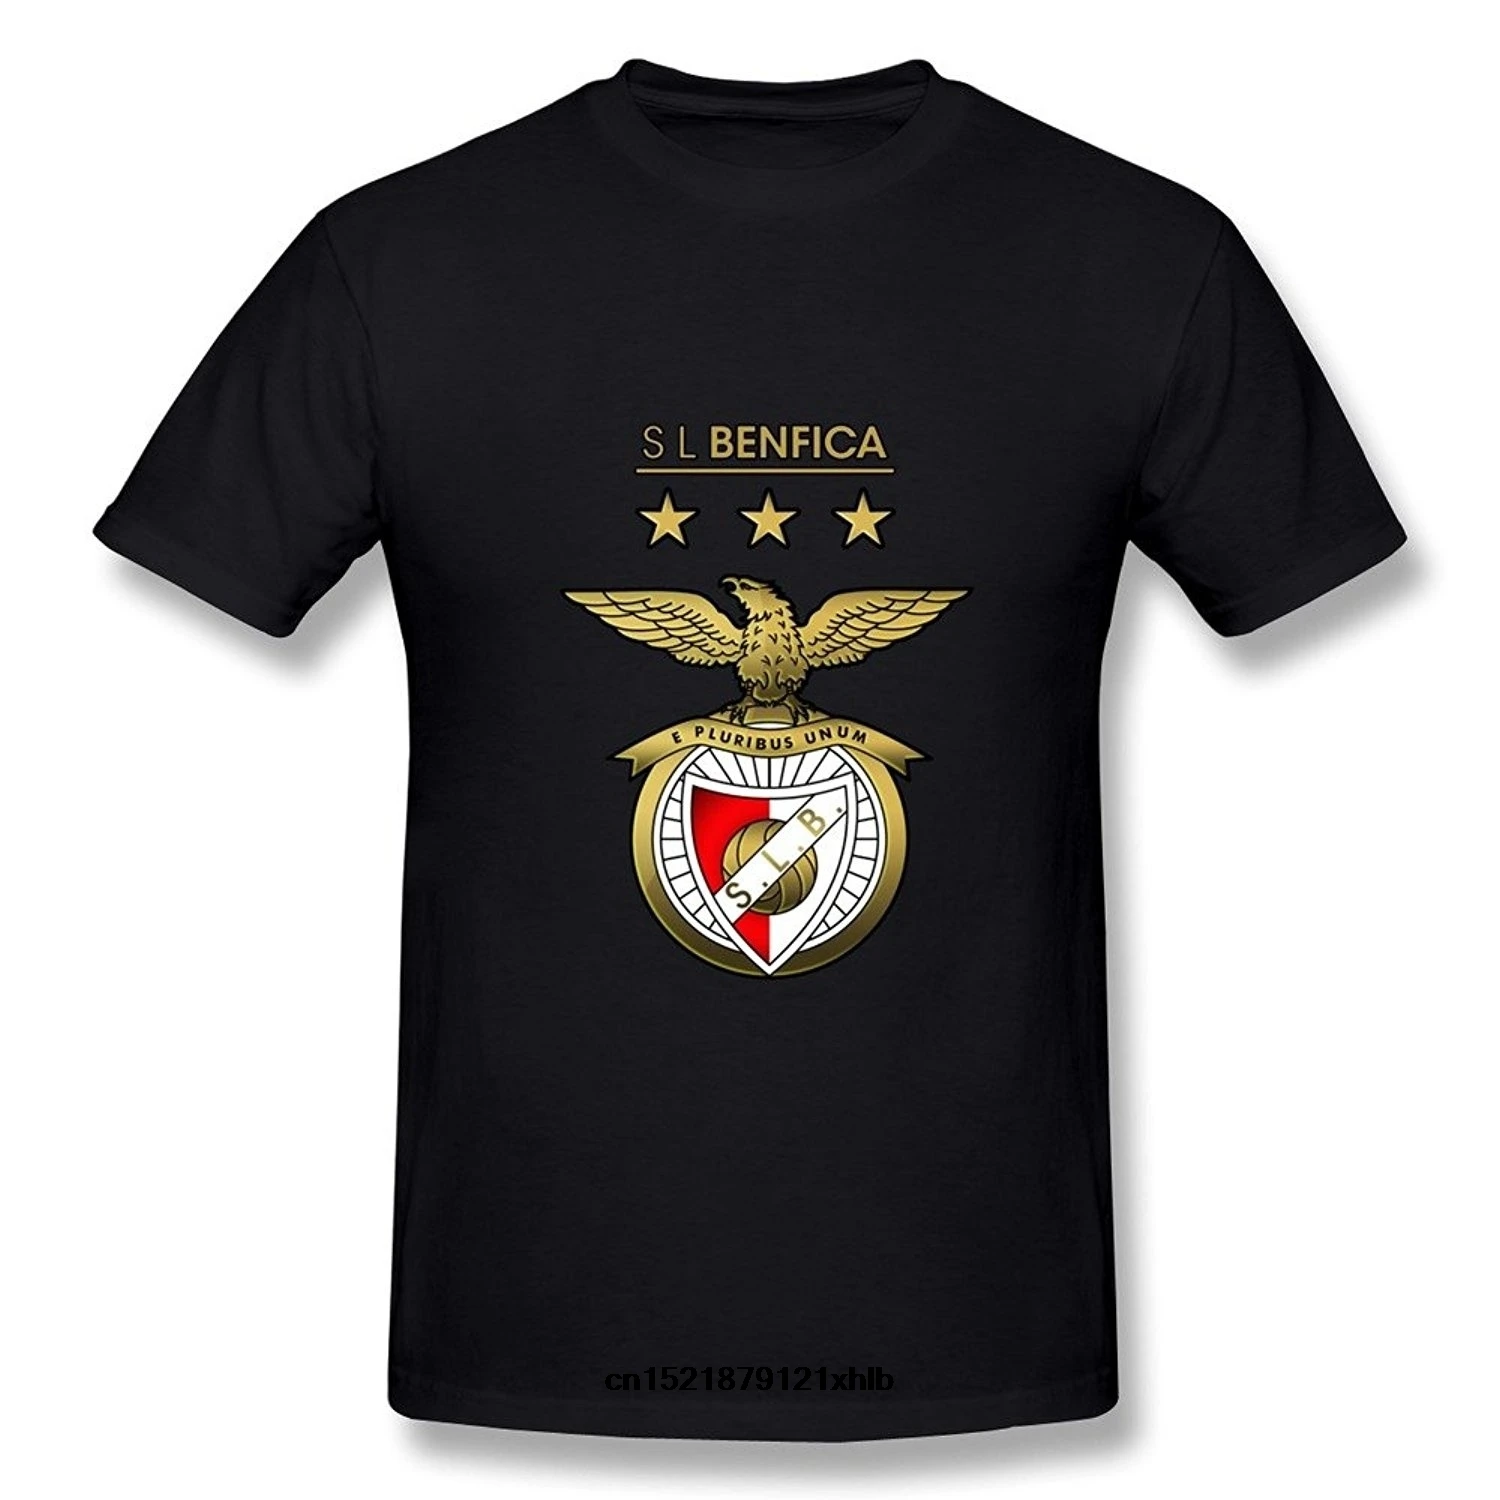 T shirt à la mode pour hommes, S.l. Benfica – t shirt femme, nouveauté,  amusant, graphique | AliExpress